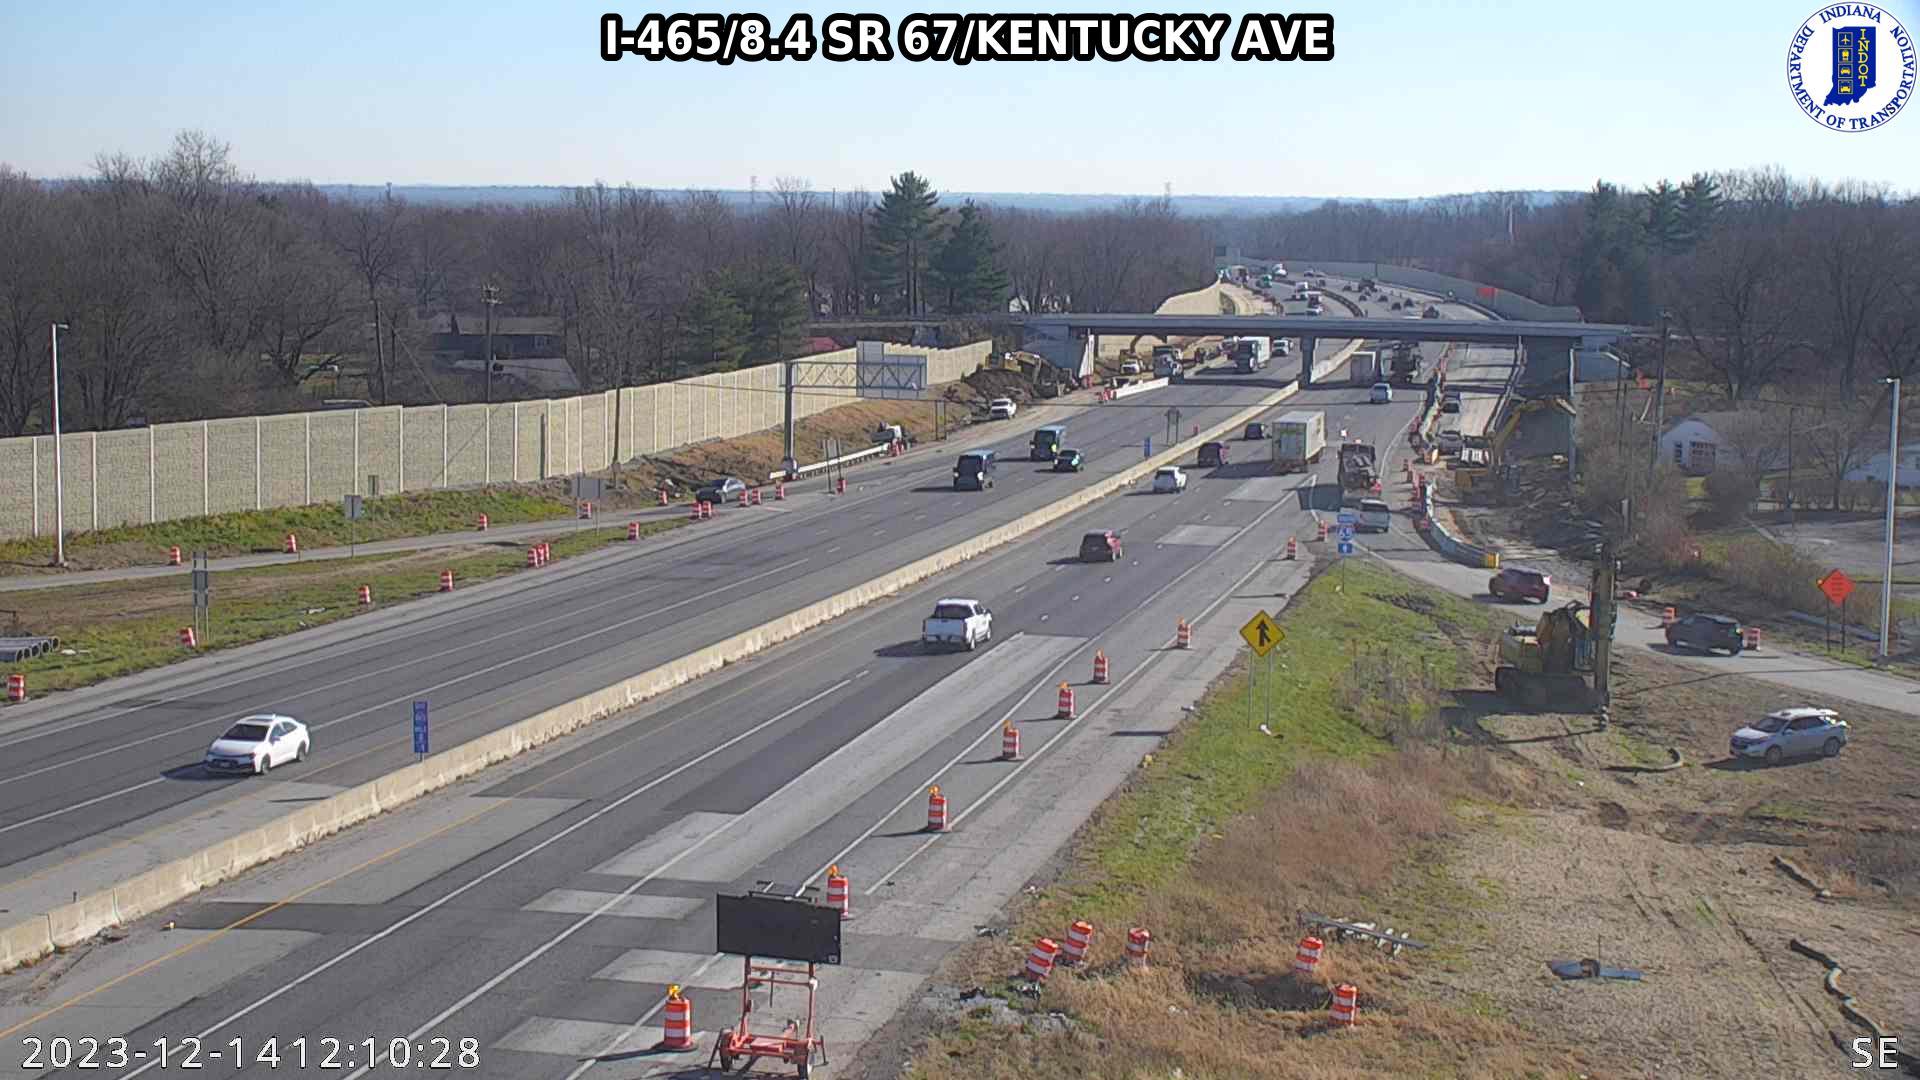 Indianapolis: I-465: I-465/8.4 SR 67/KENTUCKY AVE: I-465/8.4 SR 67/KENTUCKY AVE Traffic Camera